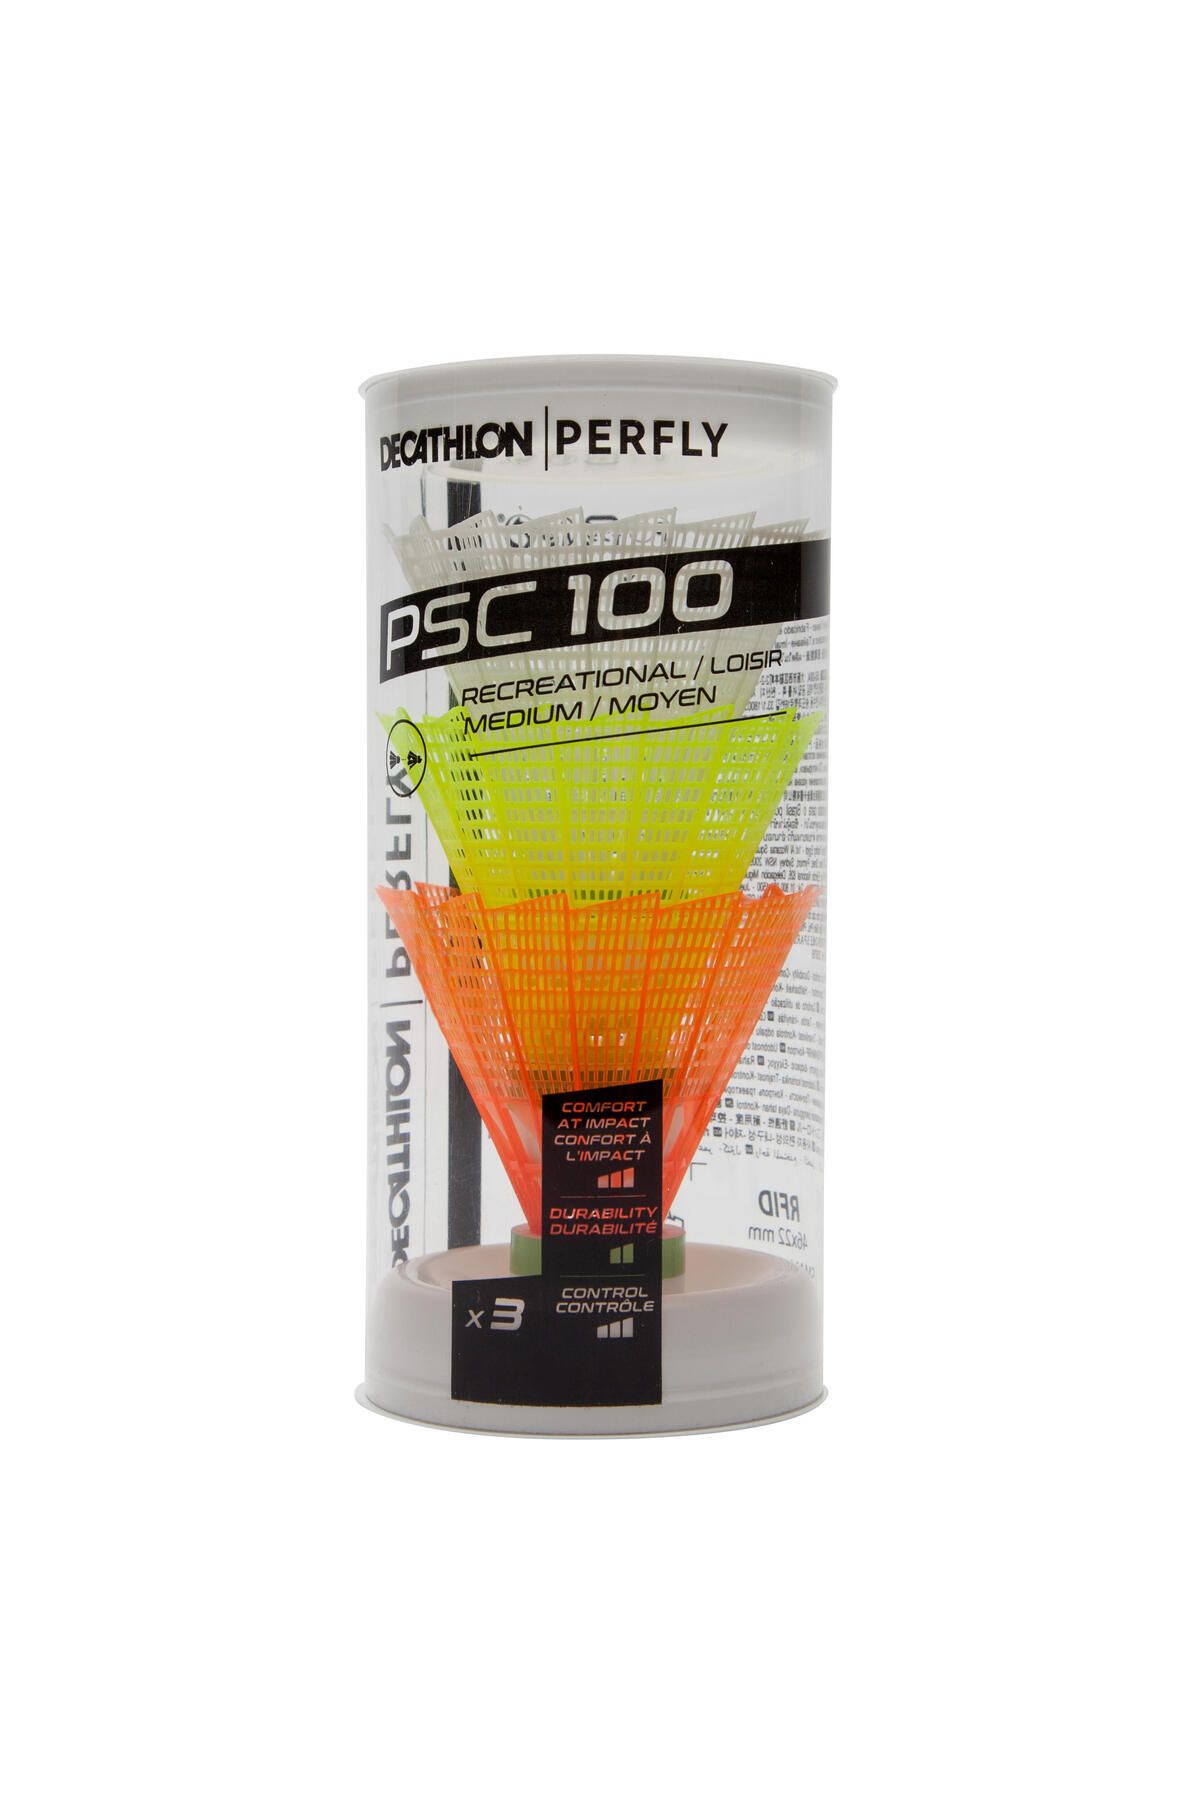 Decathlon Perfly Badminton Topu - Orta Boy - 3'lü Paket - Psc 100